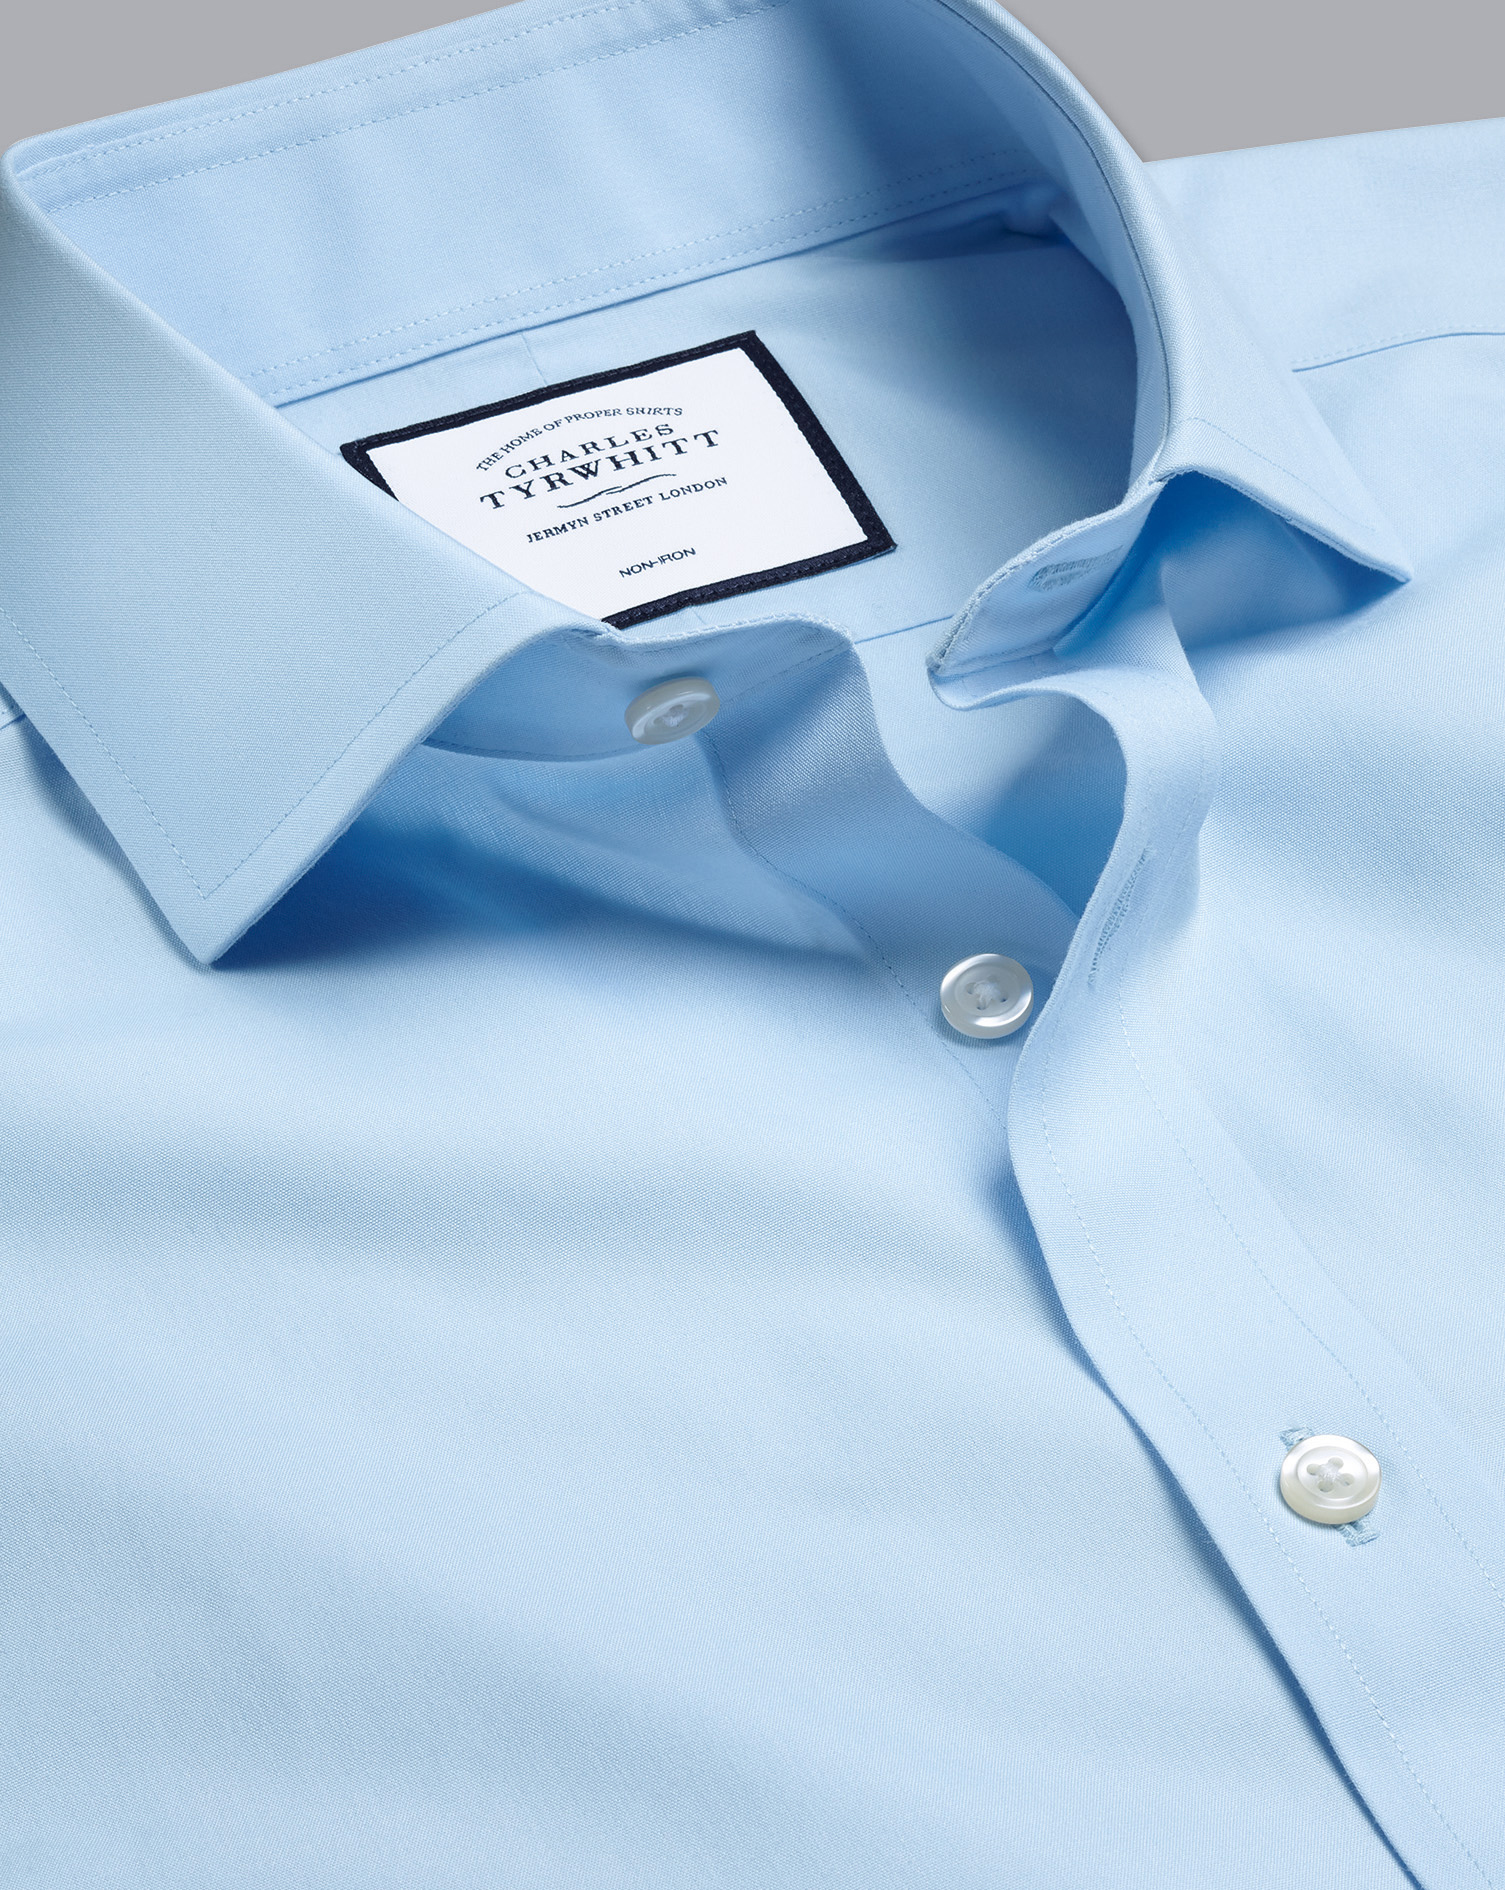 Cutaway Collar Non-Iron Poplin Cotton Dress Shirt - Sky Blue Single Cuff Size Large
